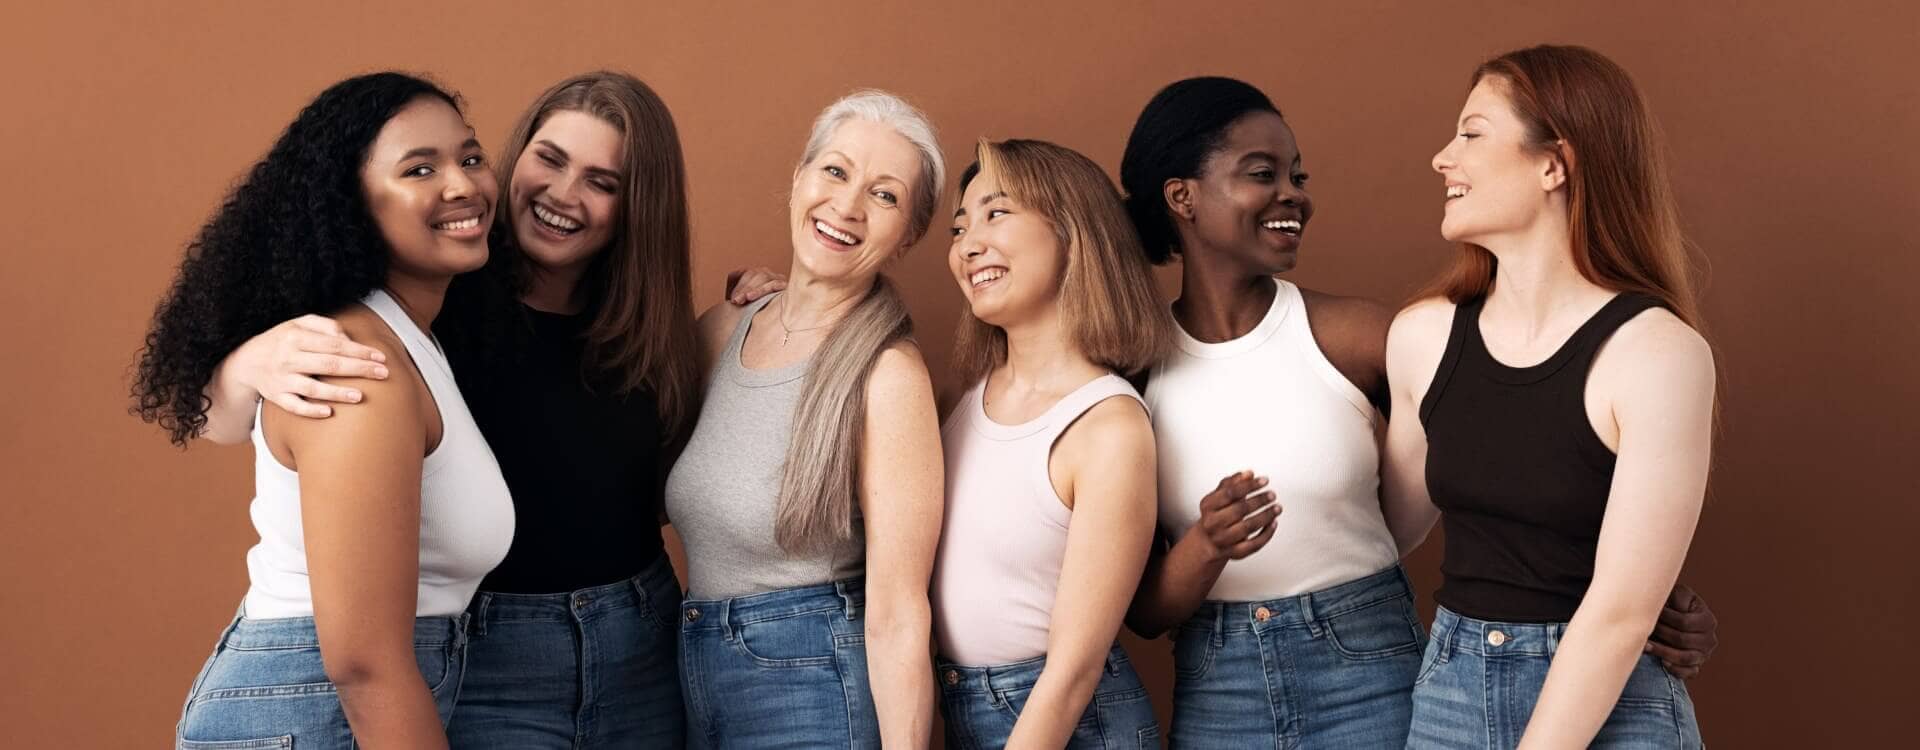 La linea Vita-Age perfetta per le tue esigenze: donne di diversa età si abbracciano felici e sorridenti